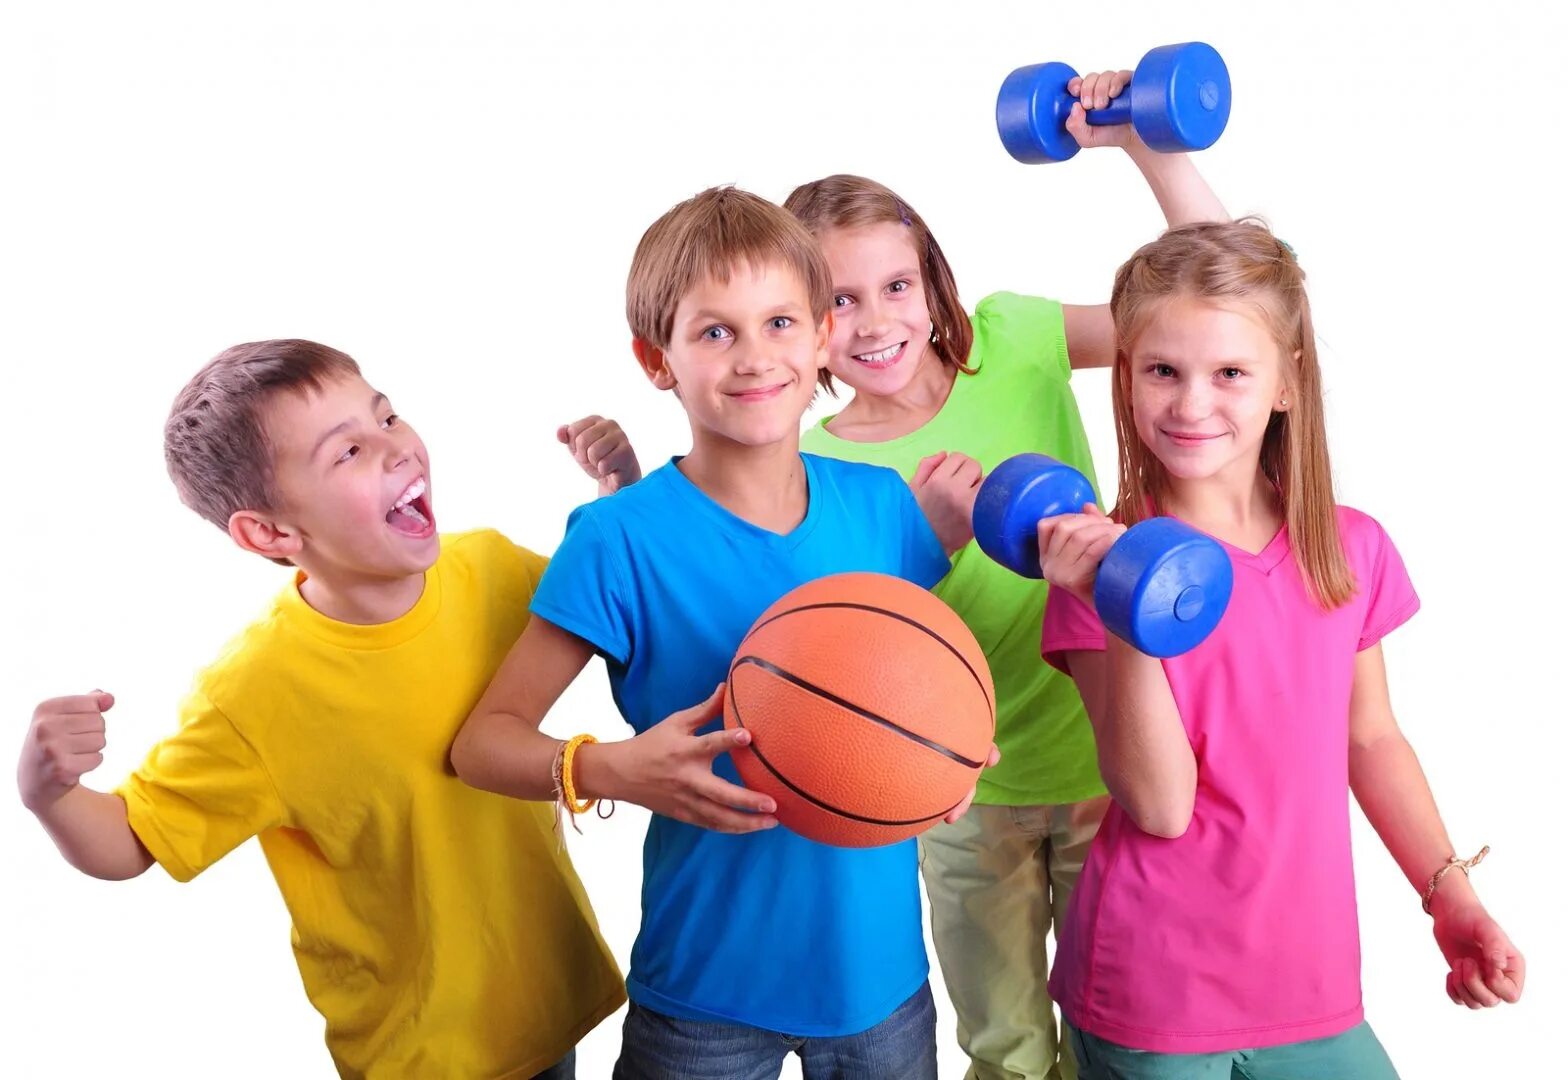 Физкультура развлечение. Спорт дети. Физическая культура. Спортивные кружки. Занятие физкультурой и спортом.